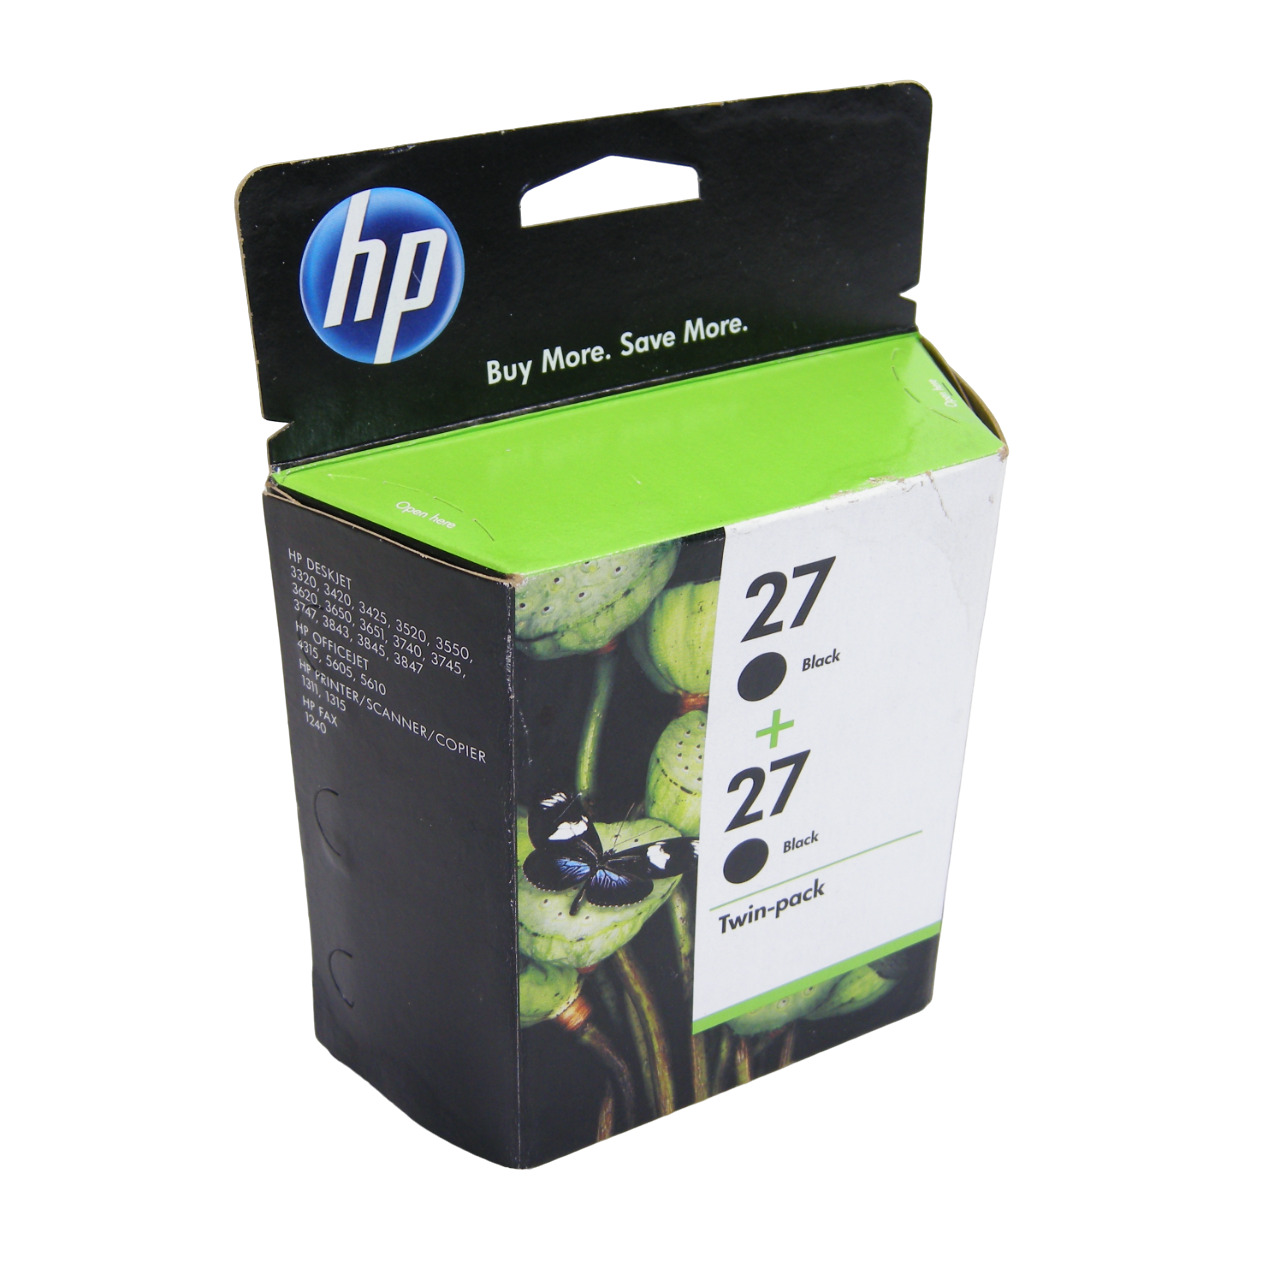 Genuine HP 27 Ink Cartridge Black Noir - 2 Pack - Exp. 07-2012 - NOS